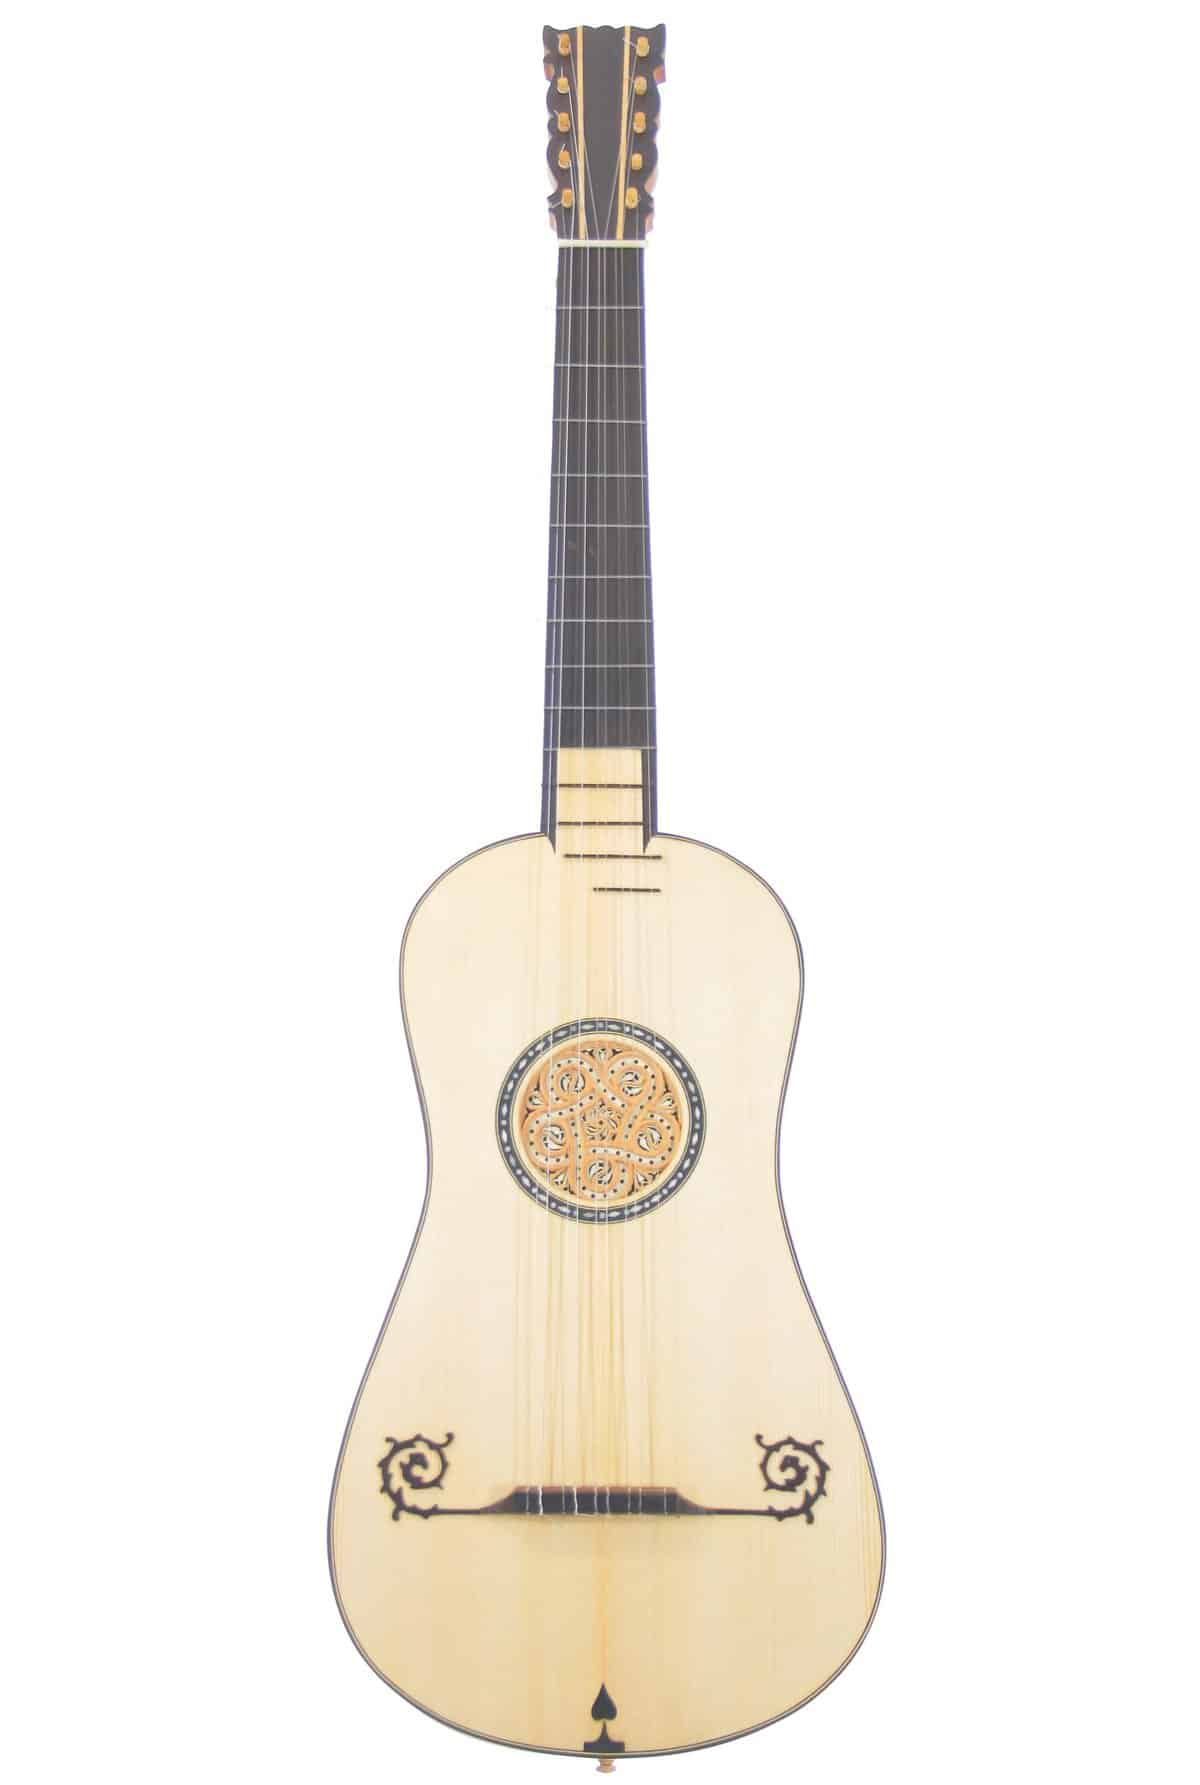 IMG 0261 - Antonio Stradivari 1679 barroque guitar 2022